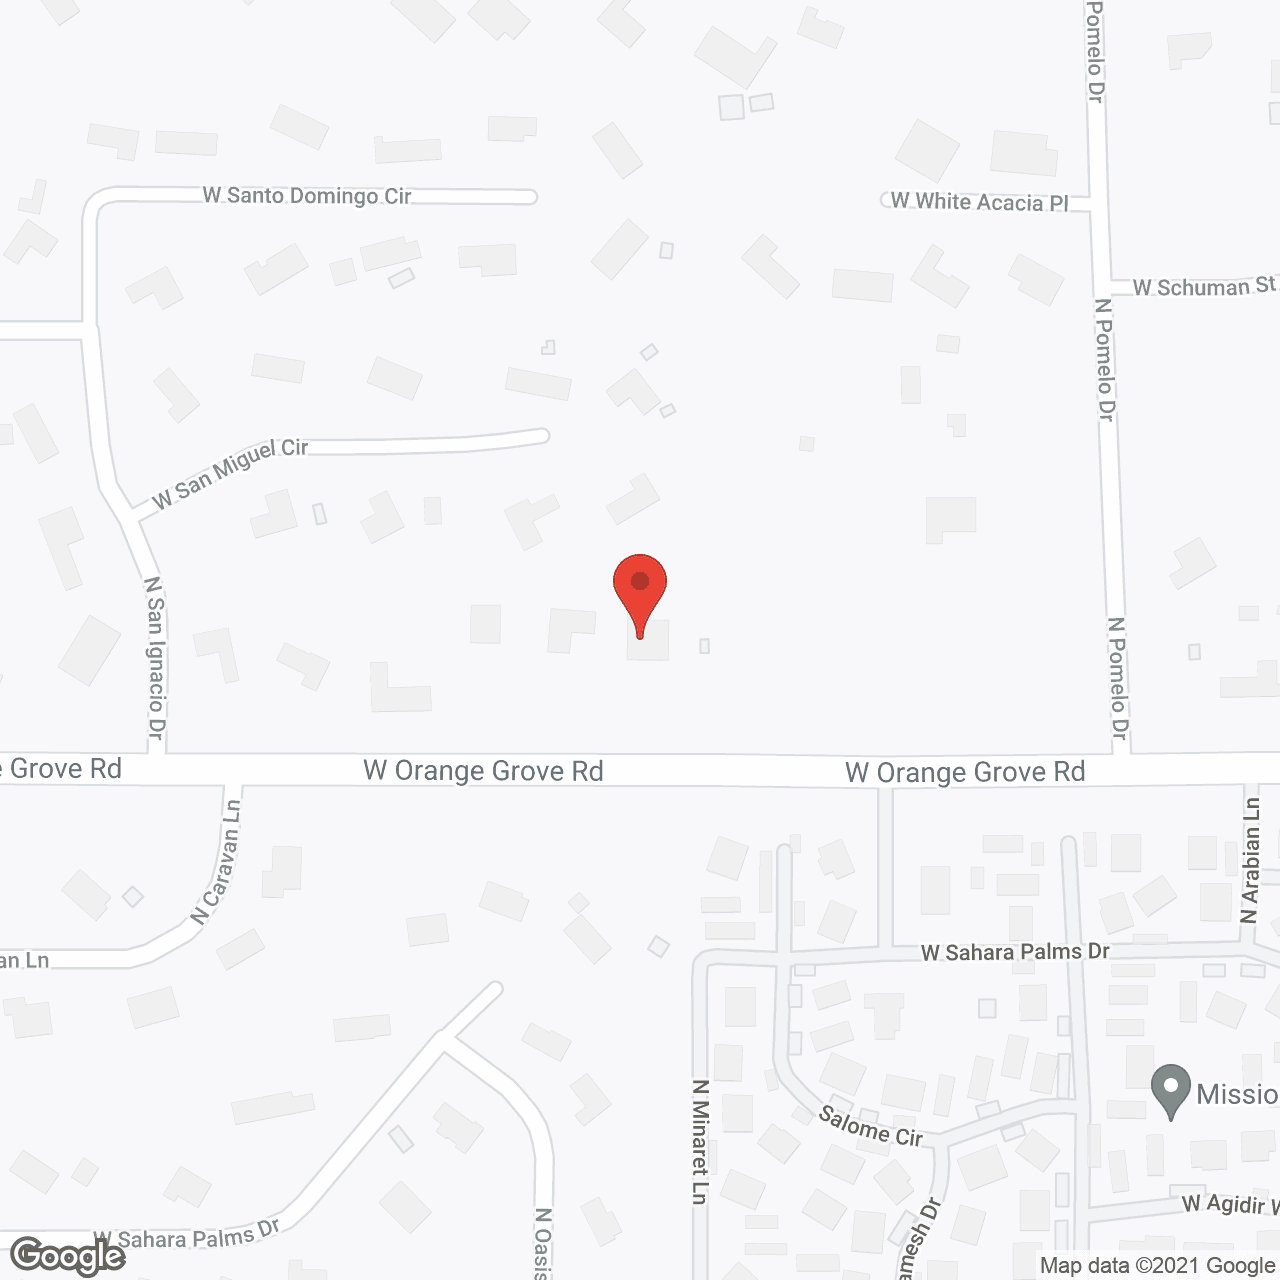 Casa De Buena Vida in google map